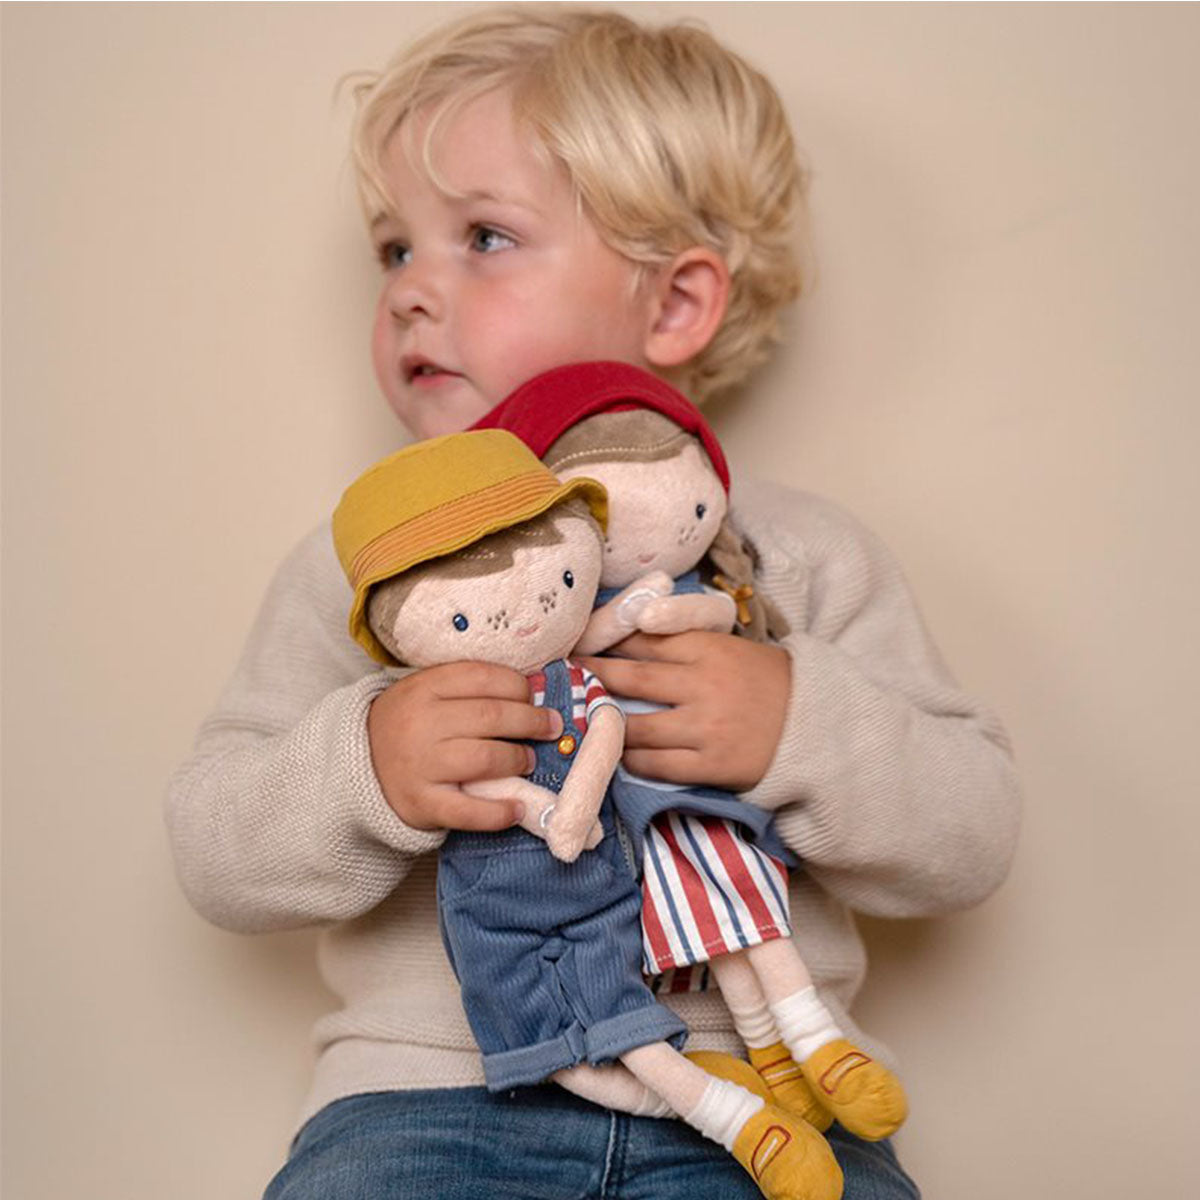 Deze superschattige Little Dutch knuffelpop Hollandse Jim is een unieke aanwinst in de knuffelcollectie van je kleintje. De lieve knuffel Jim neemt je kindje graag mee in het boerenleven. VanZus